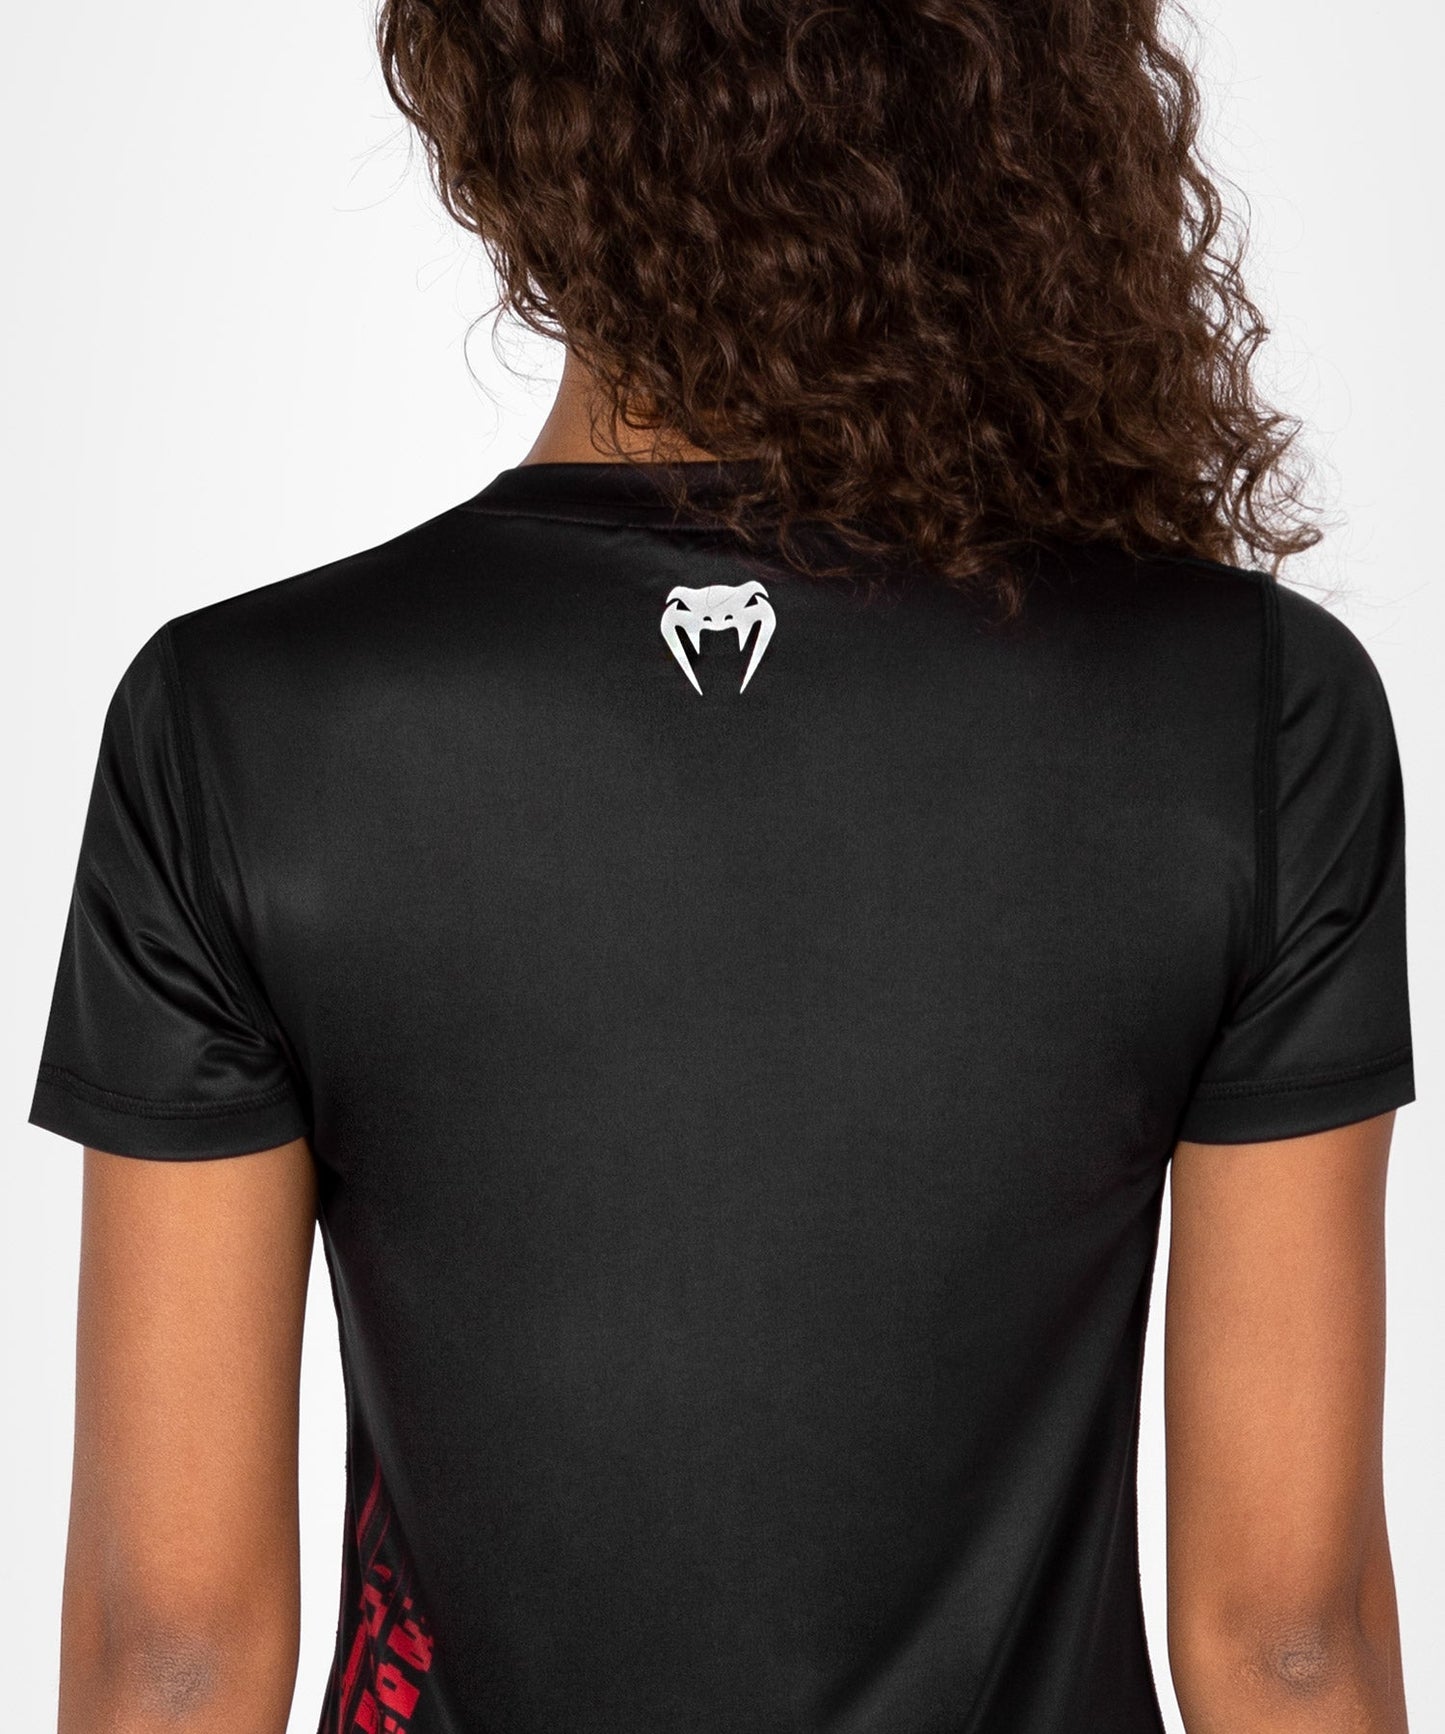 UFC Venum Performance Institute 2.0 Dry-Tech T-shirt für Frauen - Schwarz/Rot